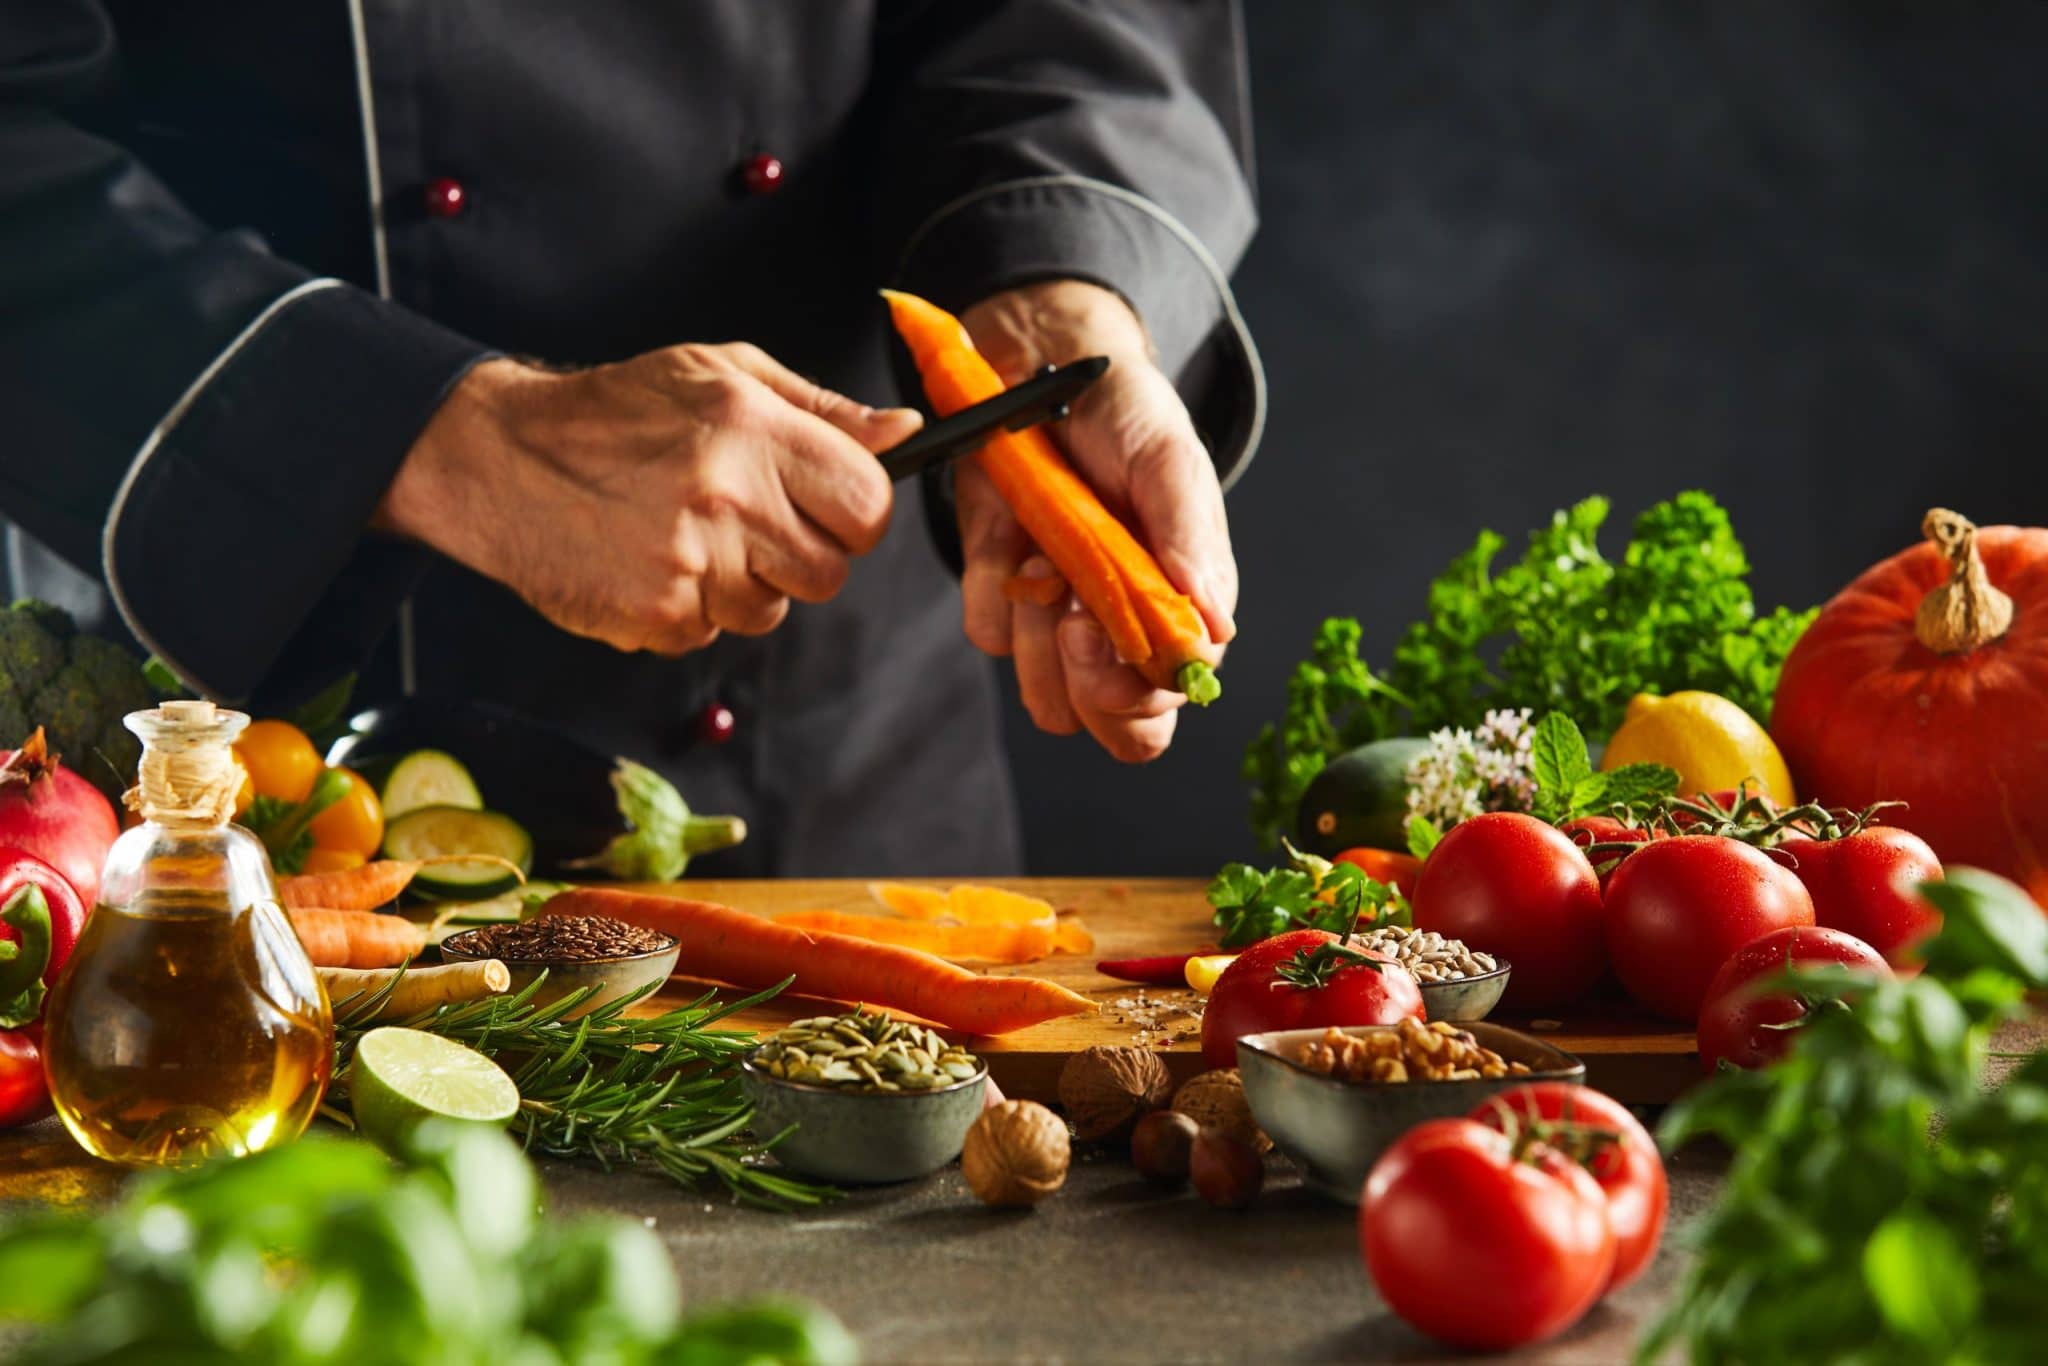 Cuisine : trouver des recettes simples à base de fruits et légumes